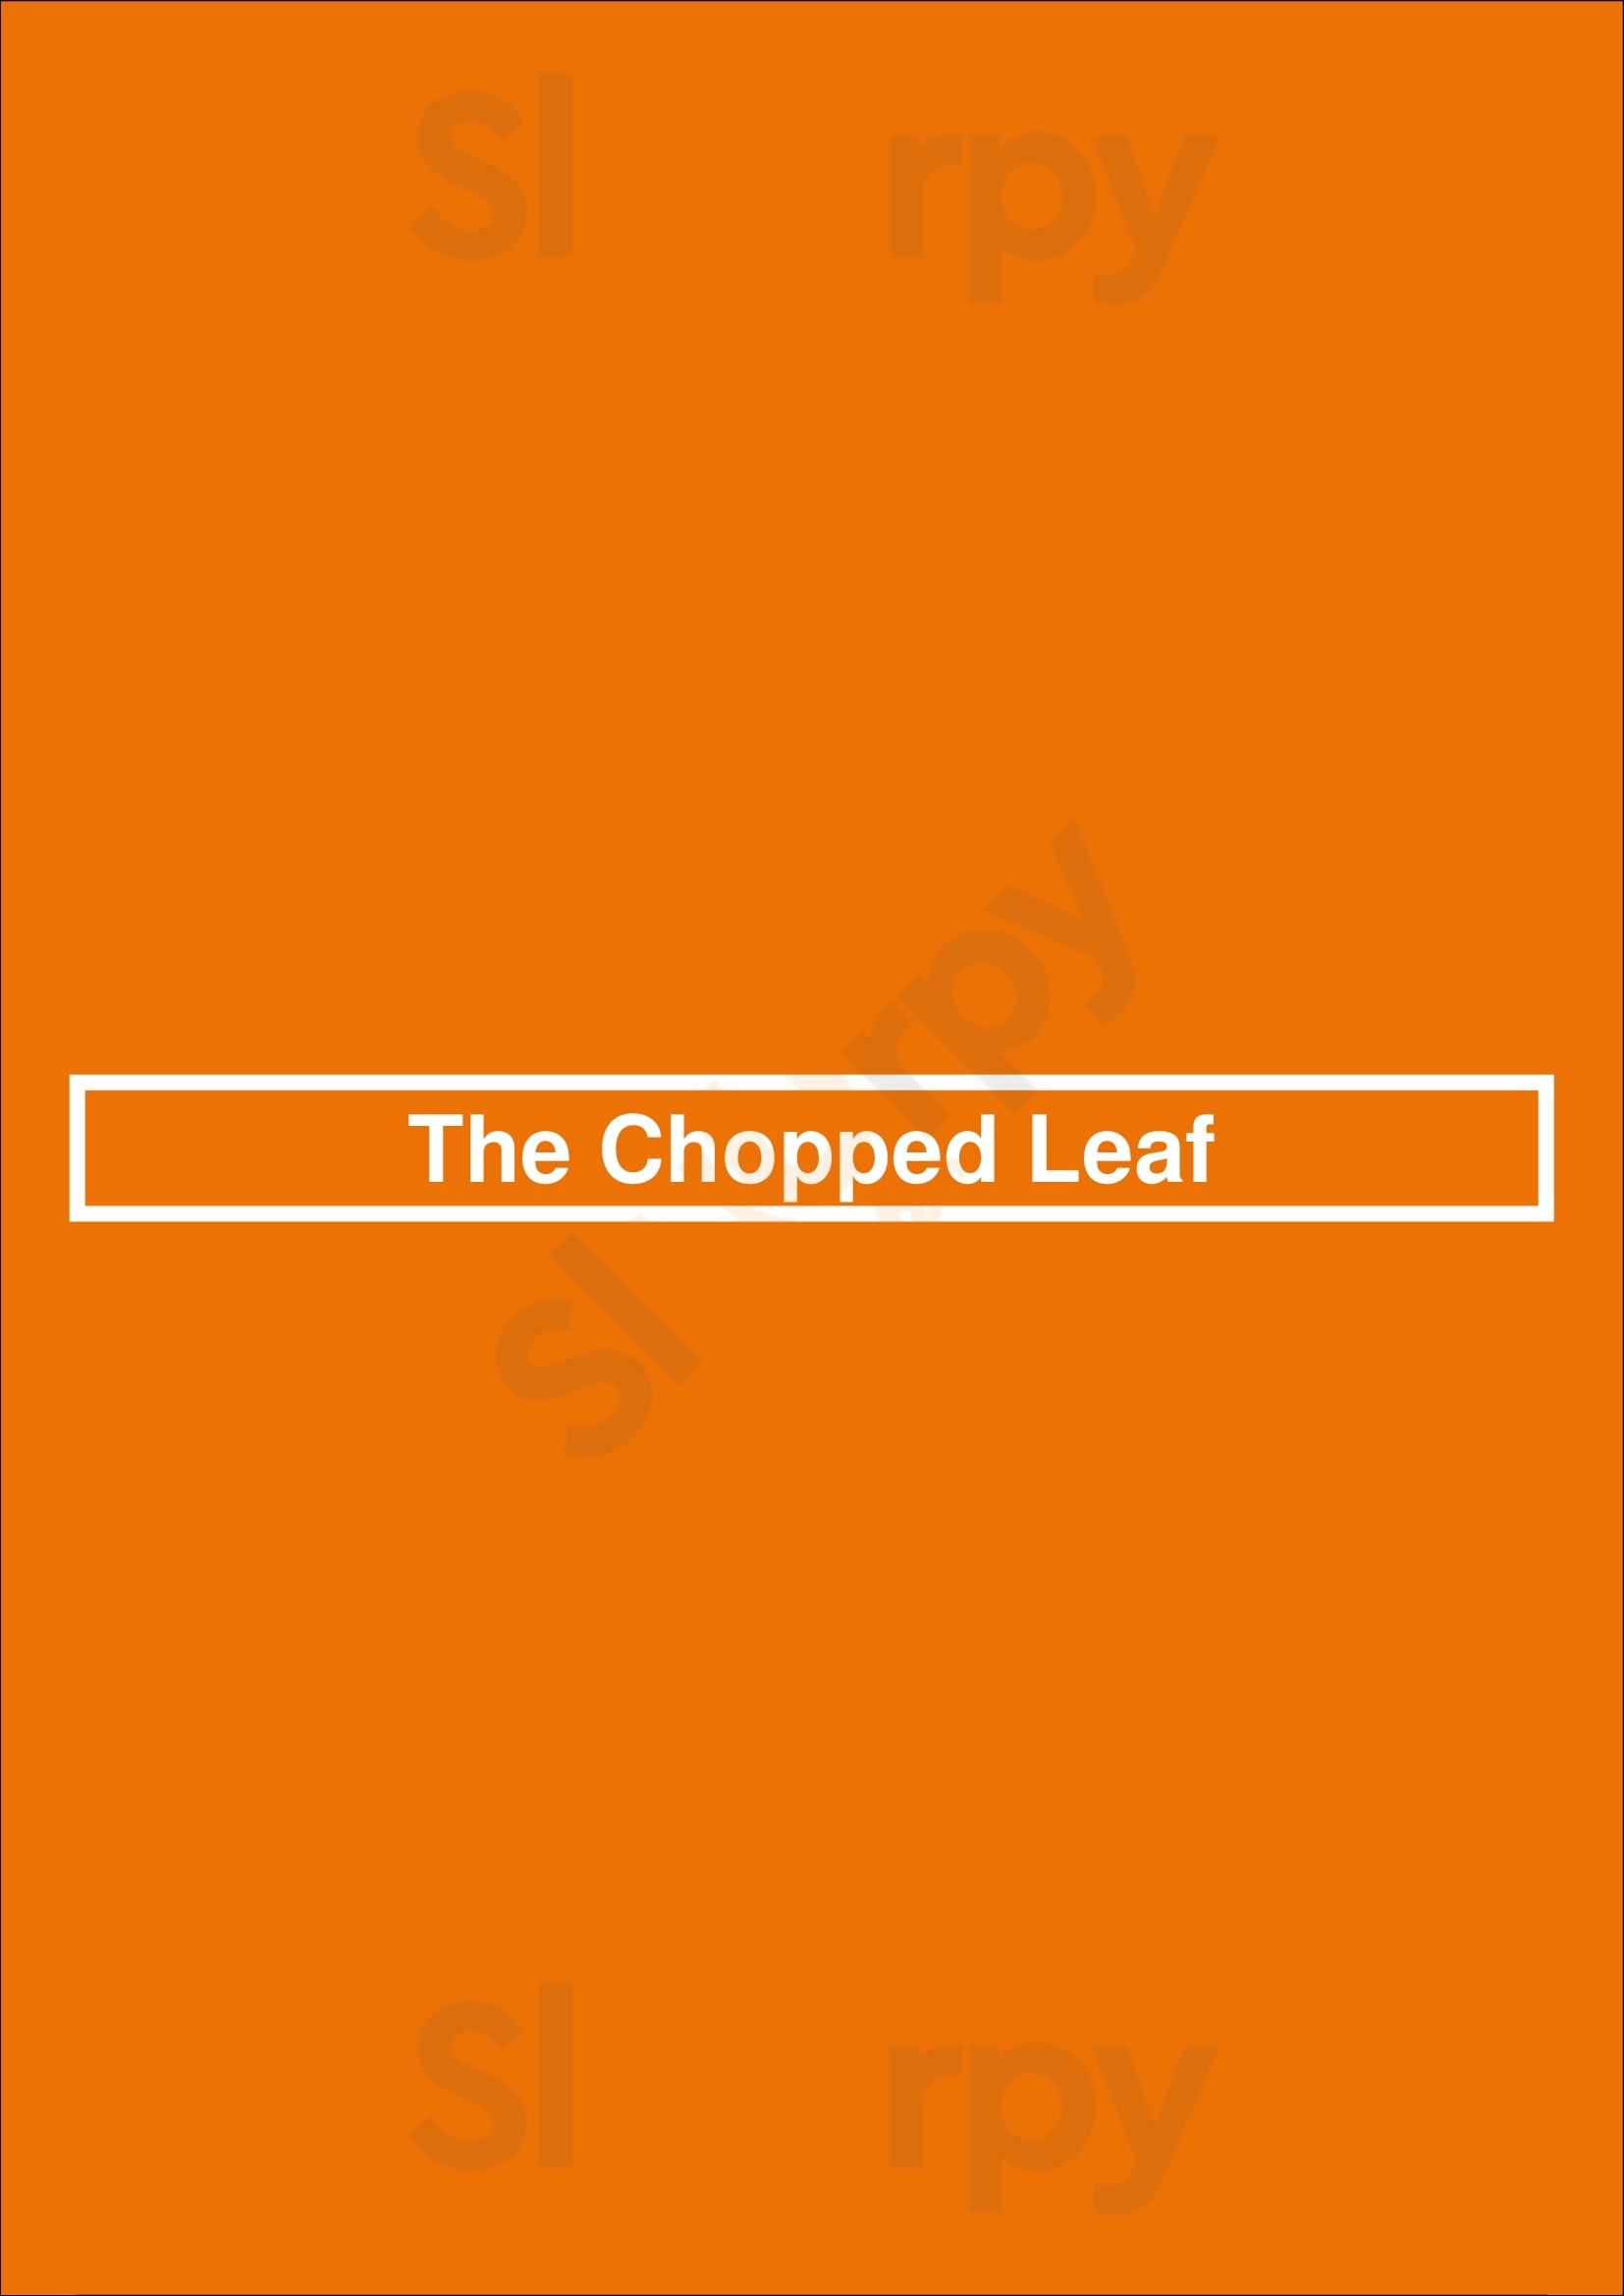 The Chopped Leaf Waterloo Menu - 1